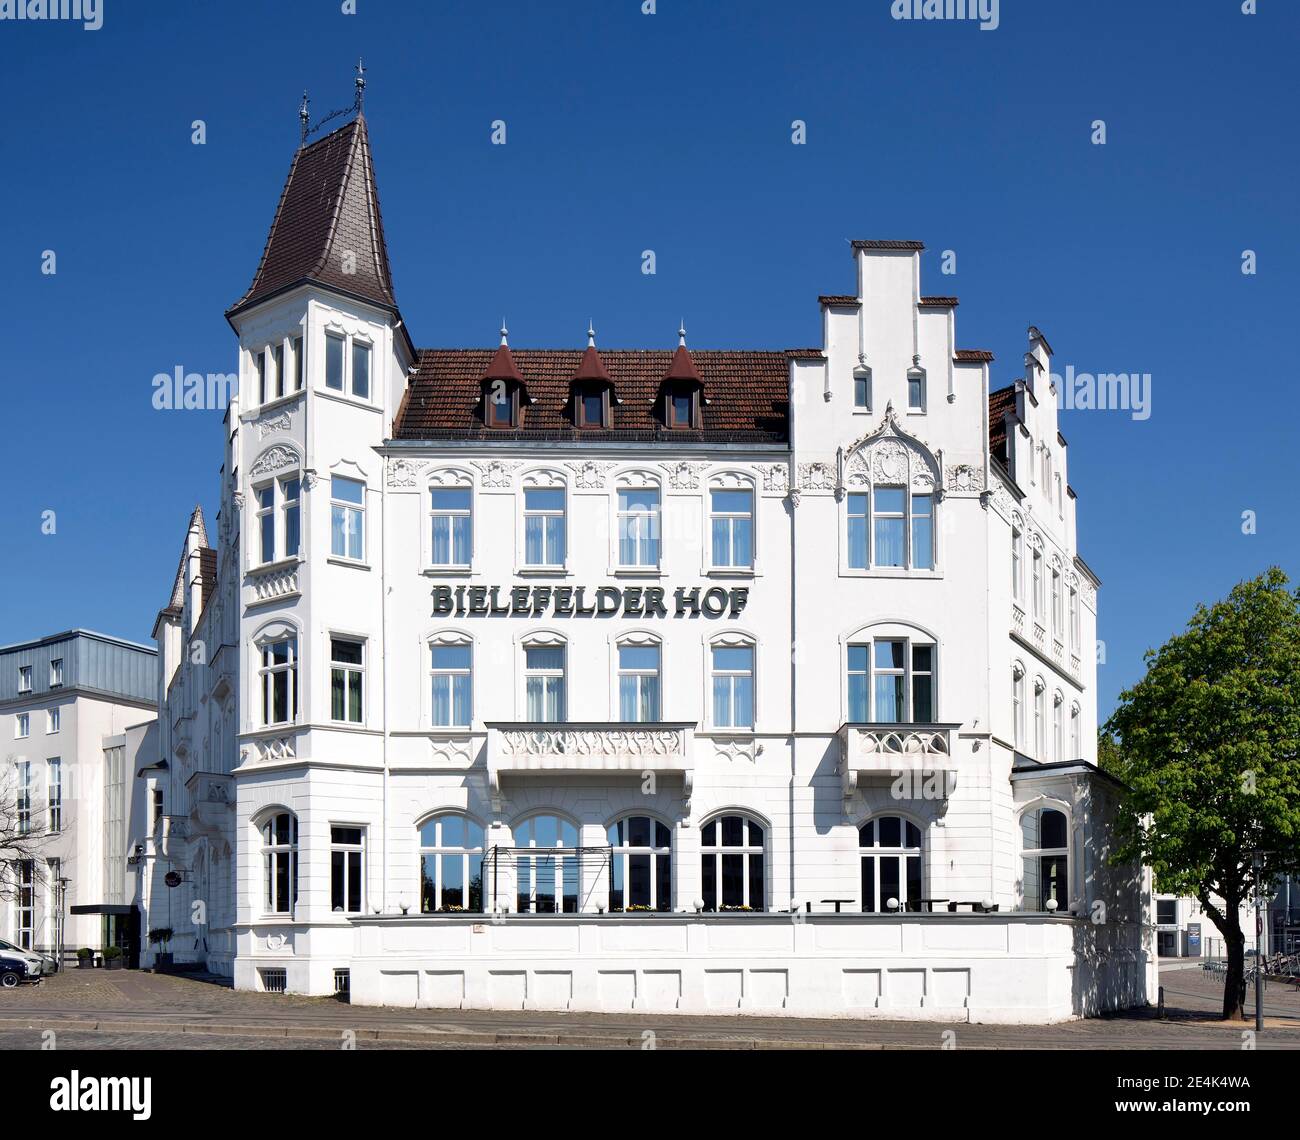 Hotel Bielefelder Hof, Bielefeld, East Westphalia, North Rhine-Westphalia, Germany Stock Photo